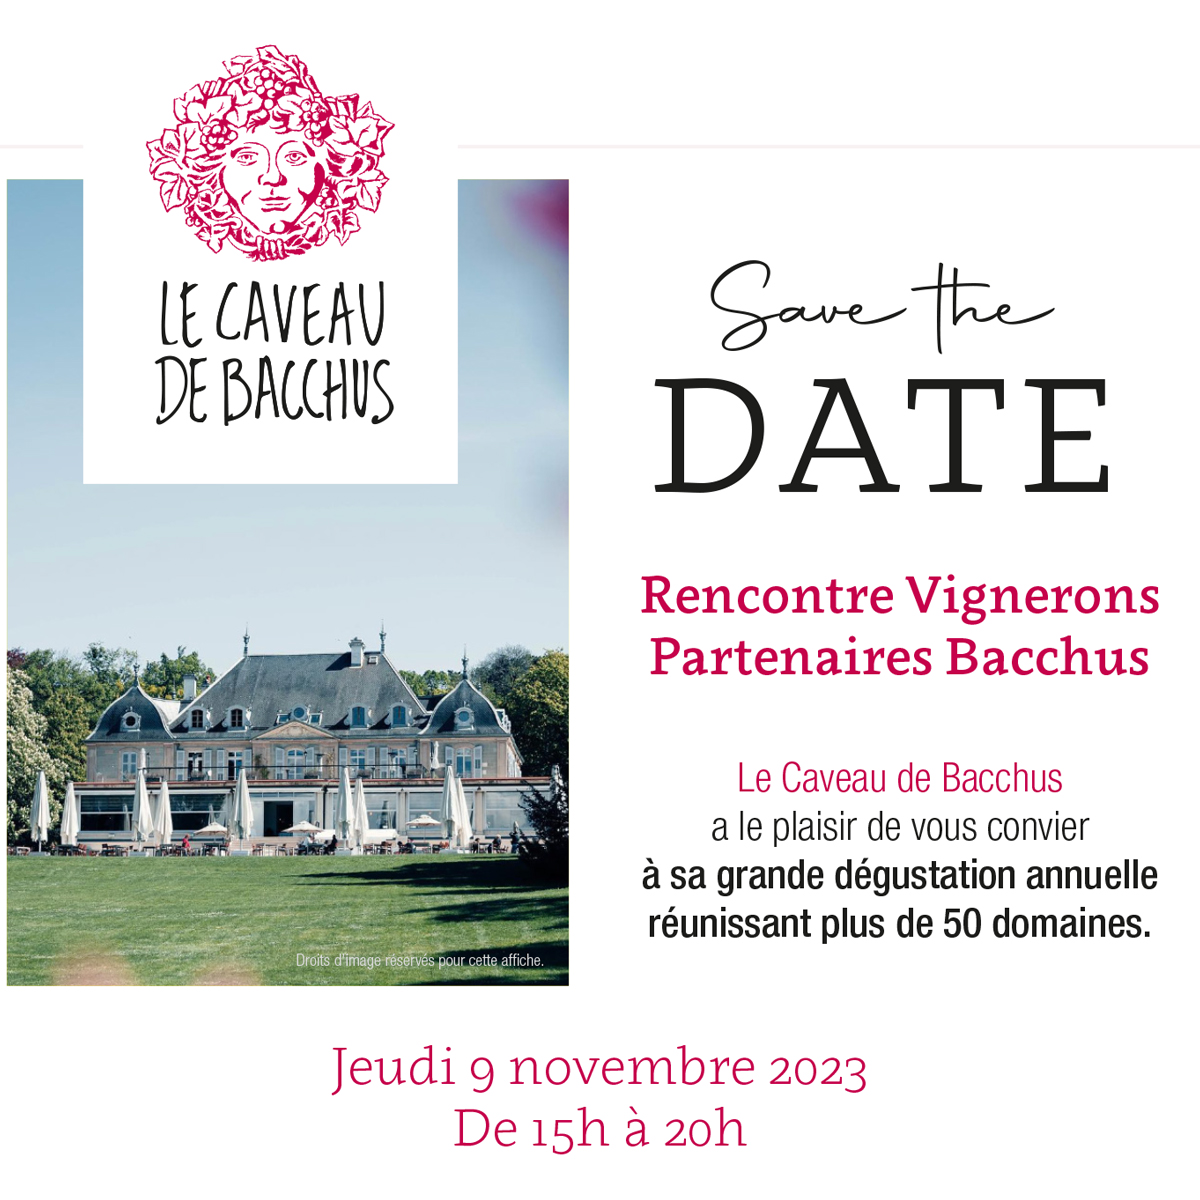 Le Caveau de Bacchus: Grande Dégustation Annuelle - Rencontre Vignerons - Save the Date!